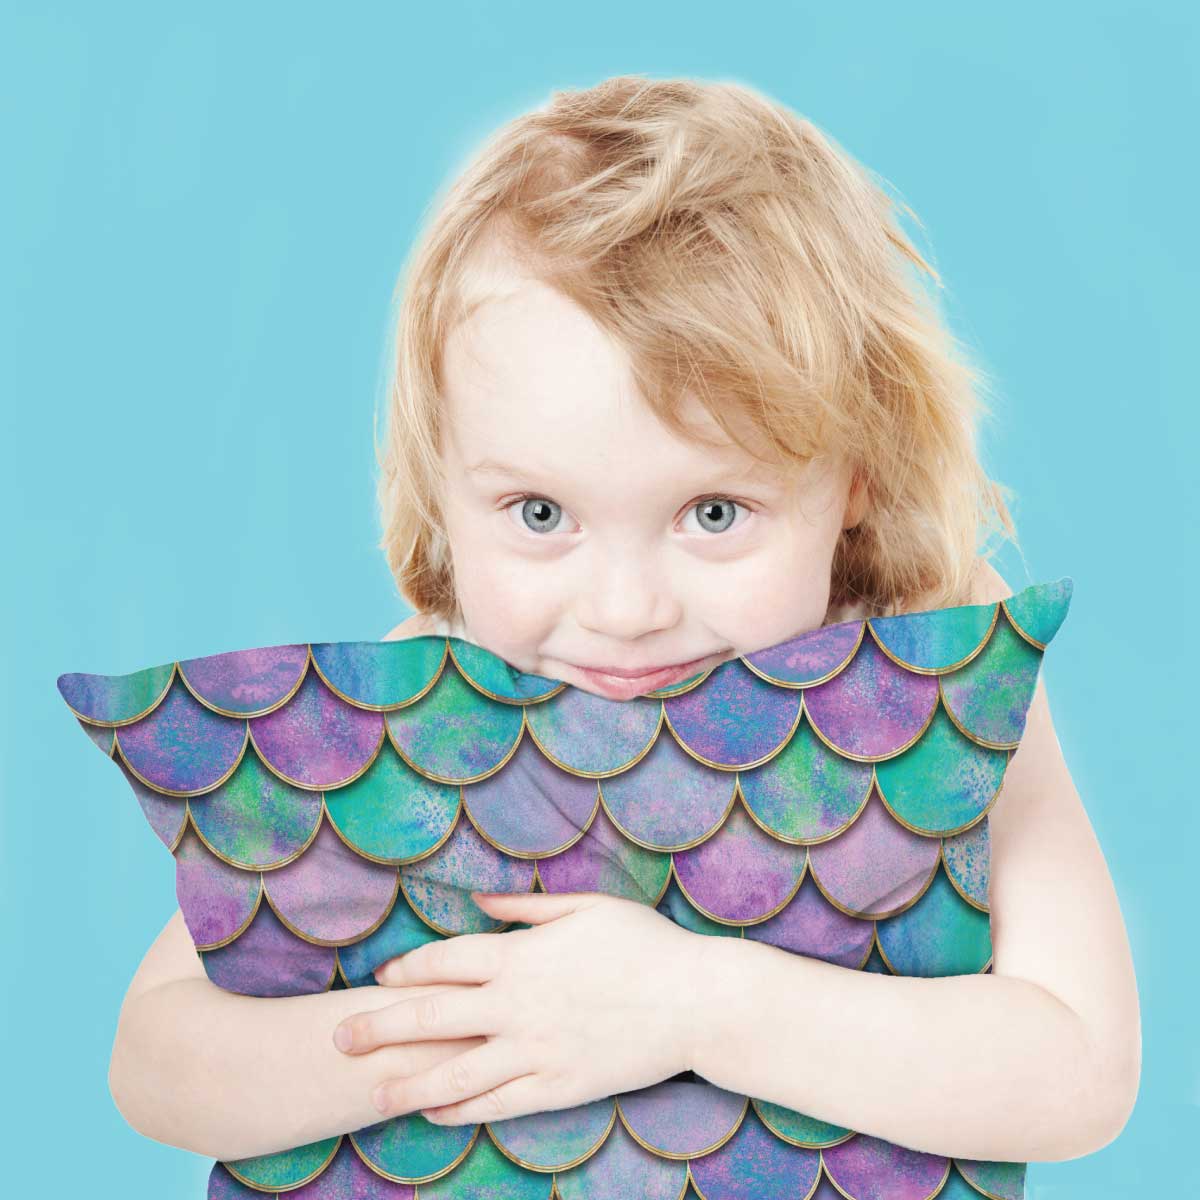 Mermaid Shimmer Sensory Cushion